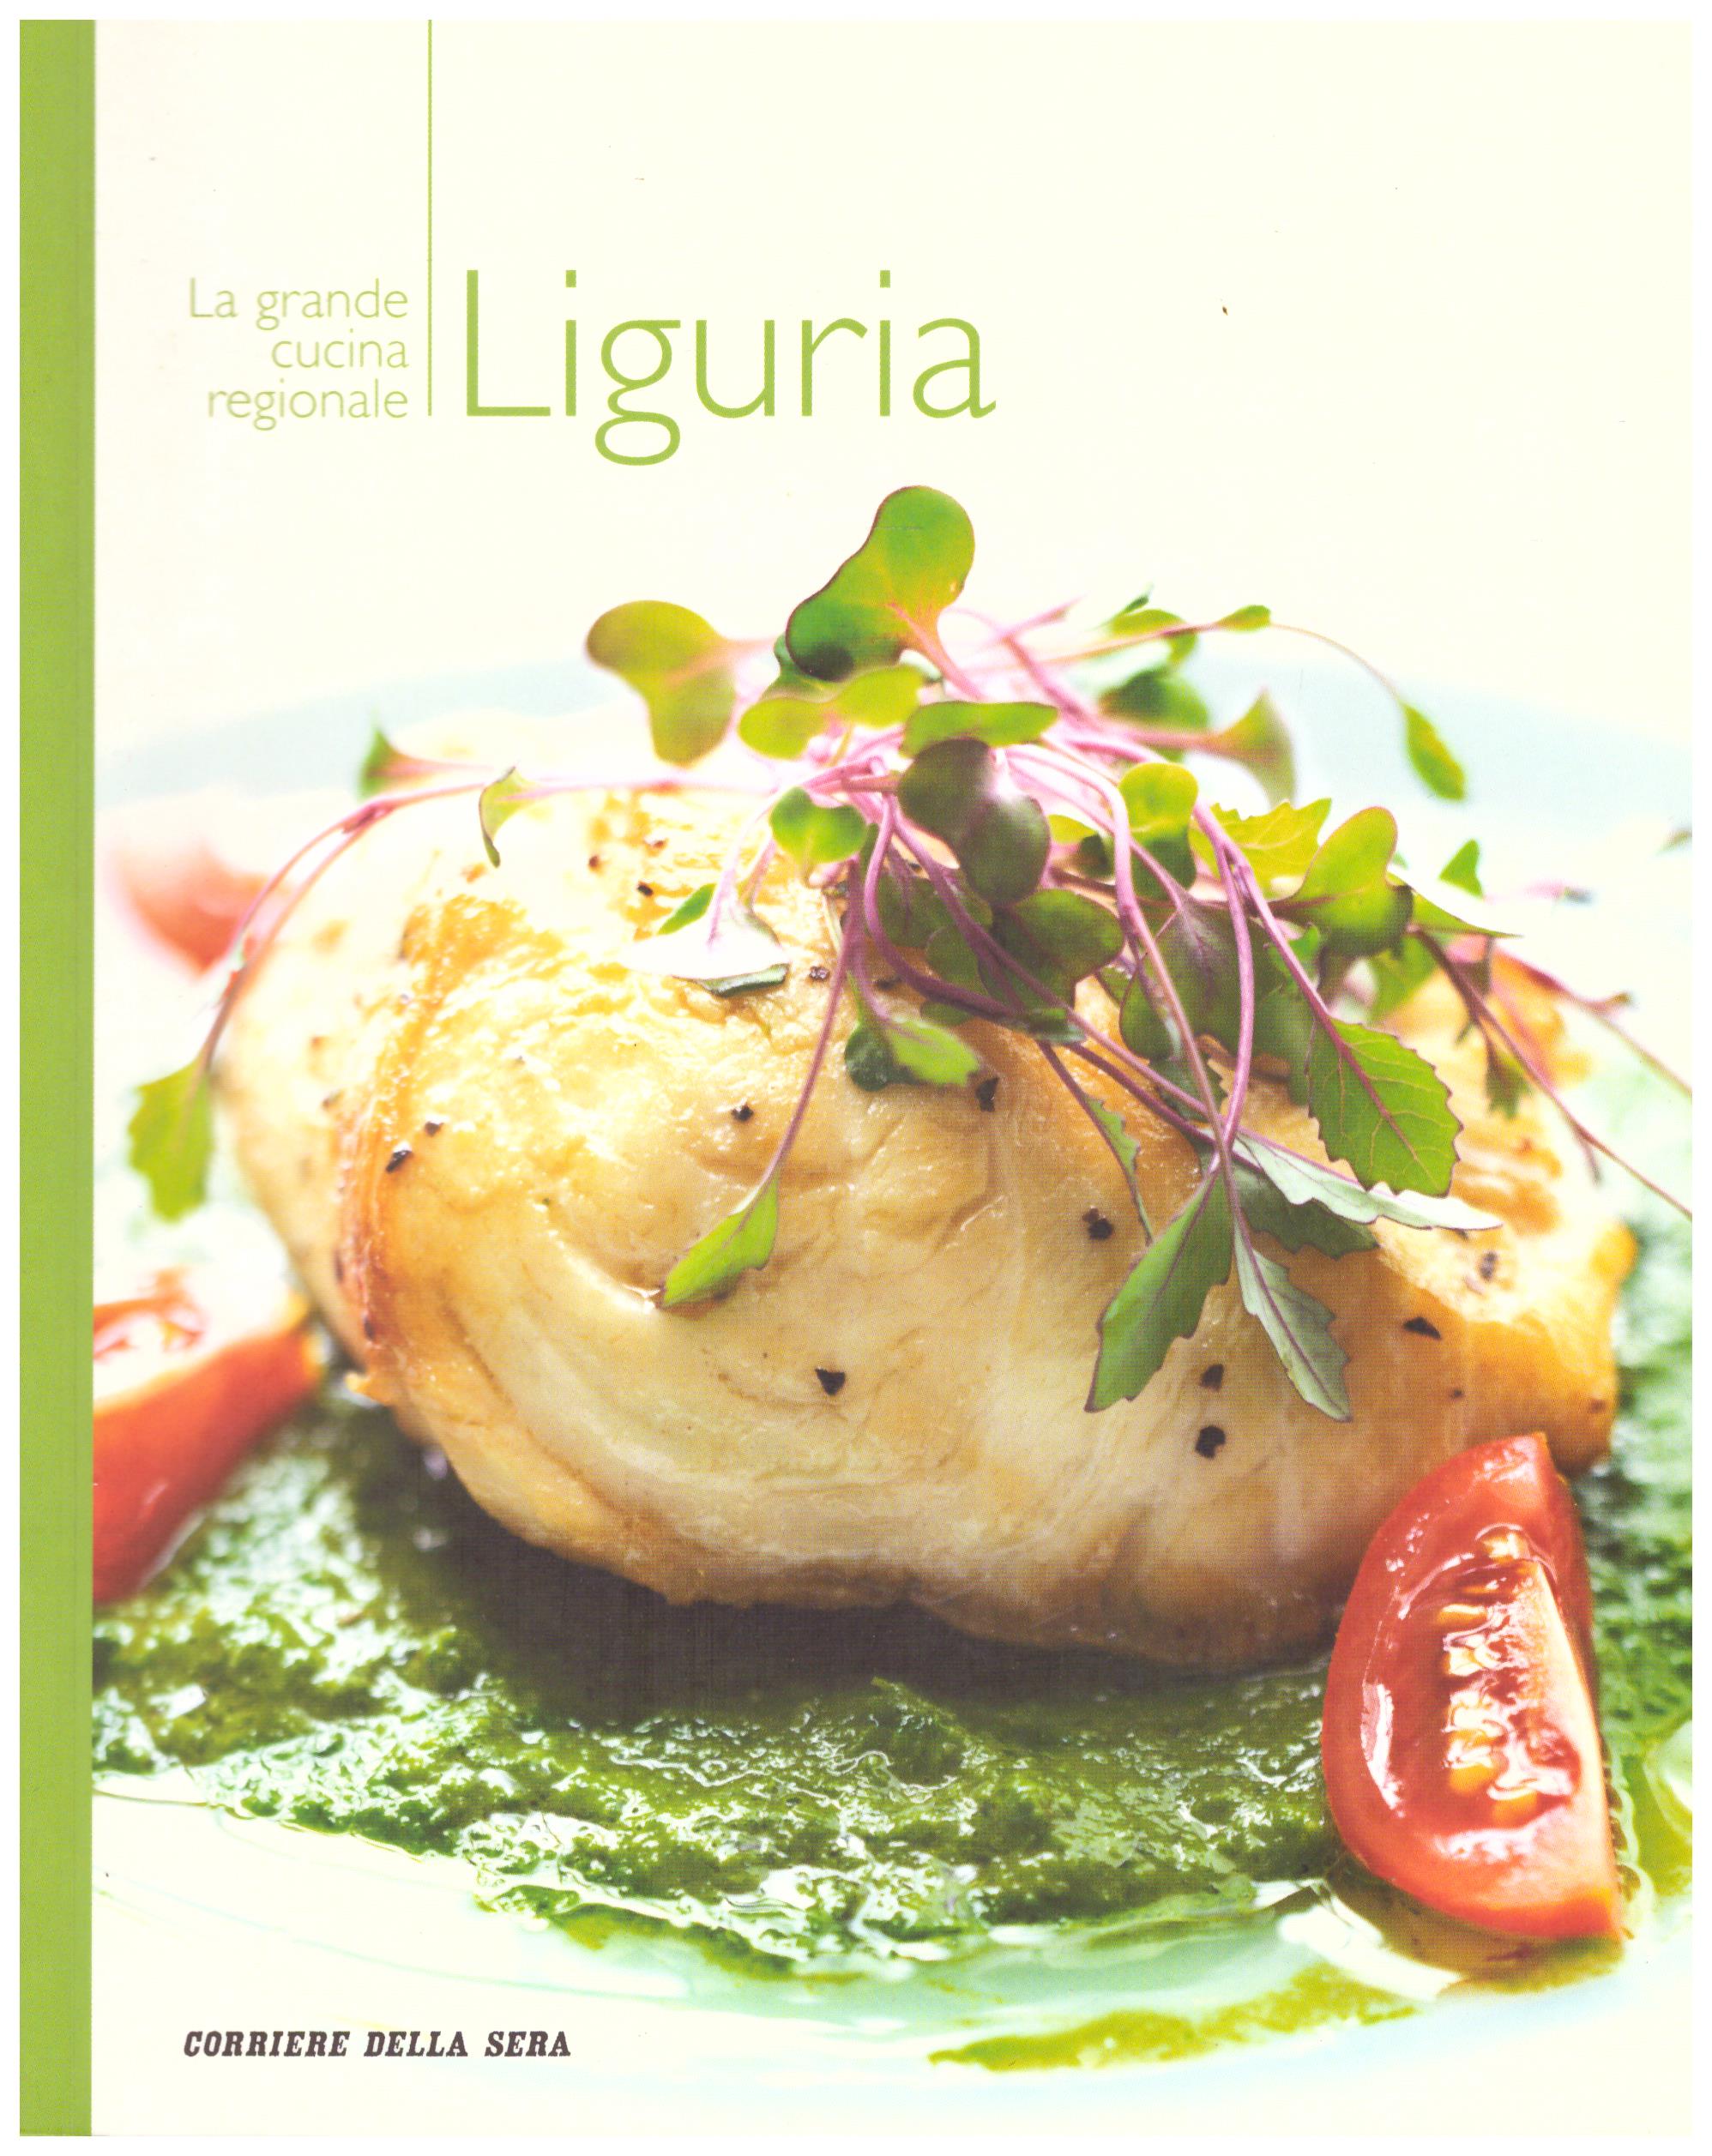 Titolo: La grande cucina regionale Liguria Autore : AA.VV.  Editore: corriere della sera